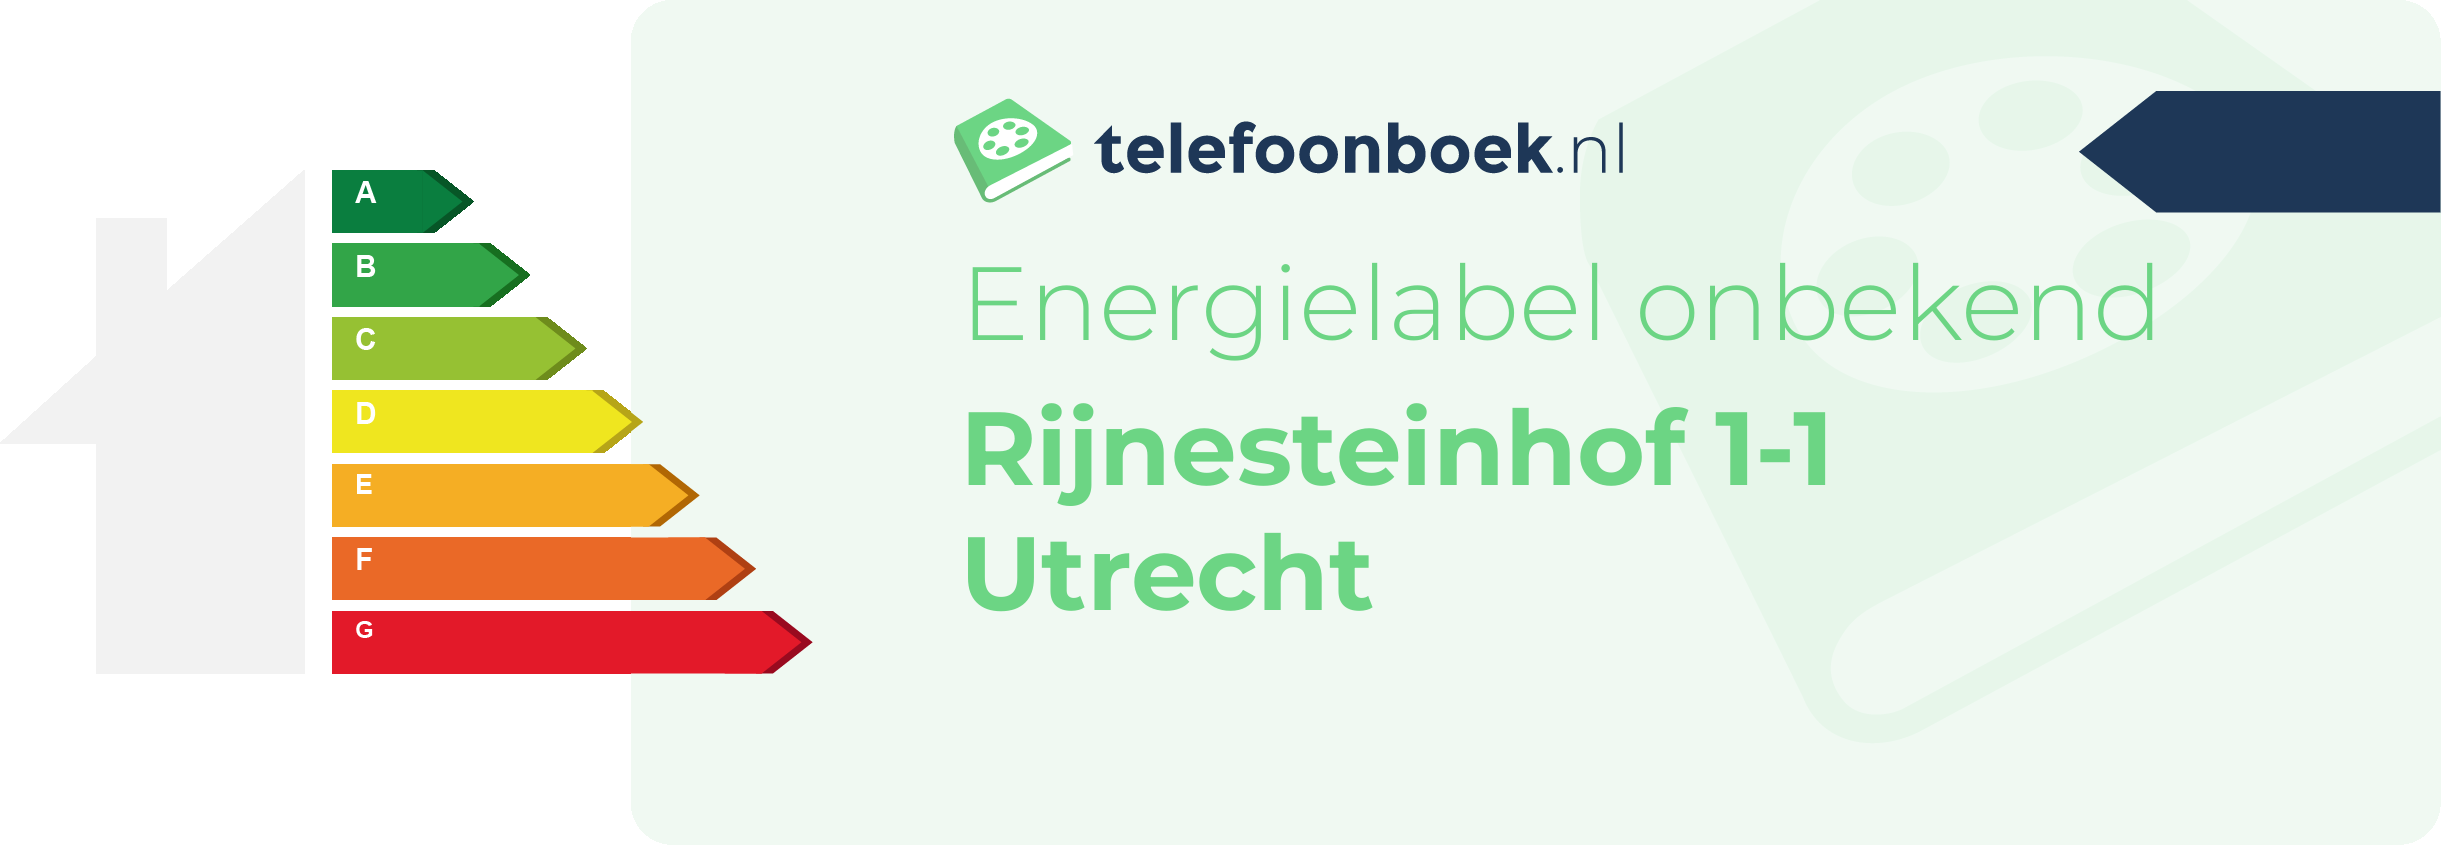 Energielabel Rijnesteinhof 1-1 Utrecht